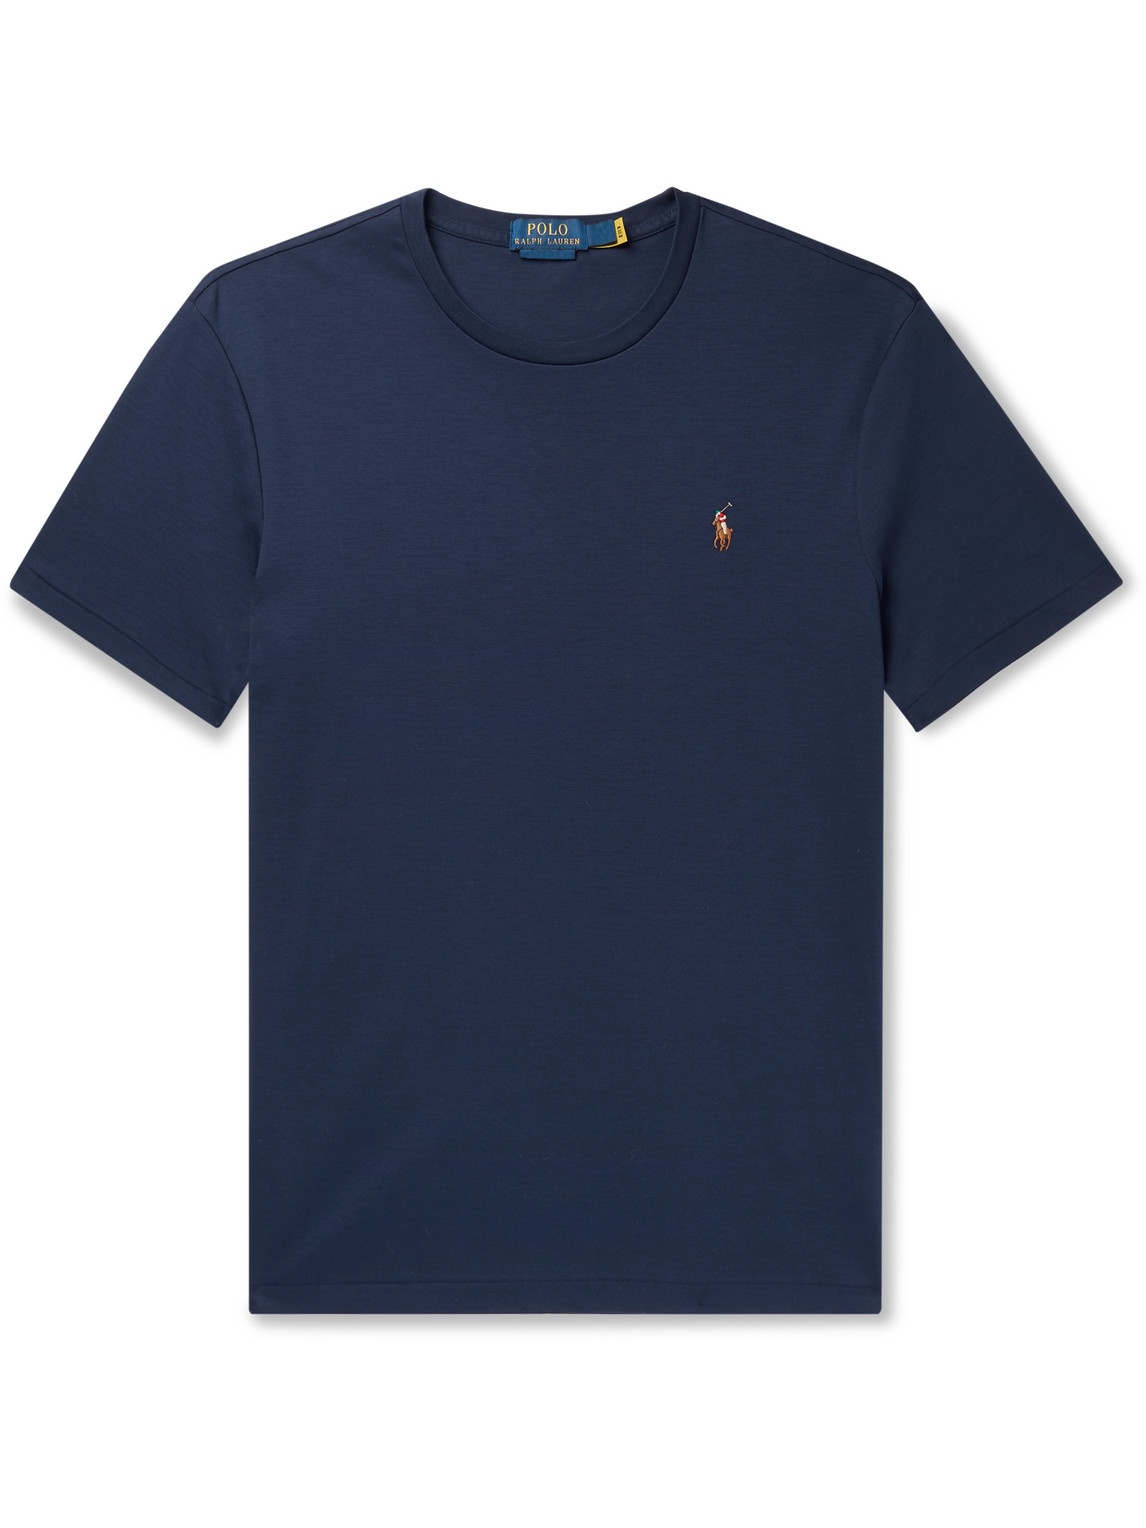 Polo Ralph Lauren - Cotton-Jersey T-Shirt - Men - Blue - XXL for Men